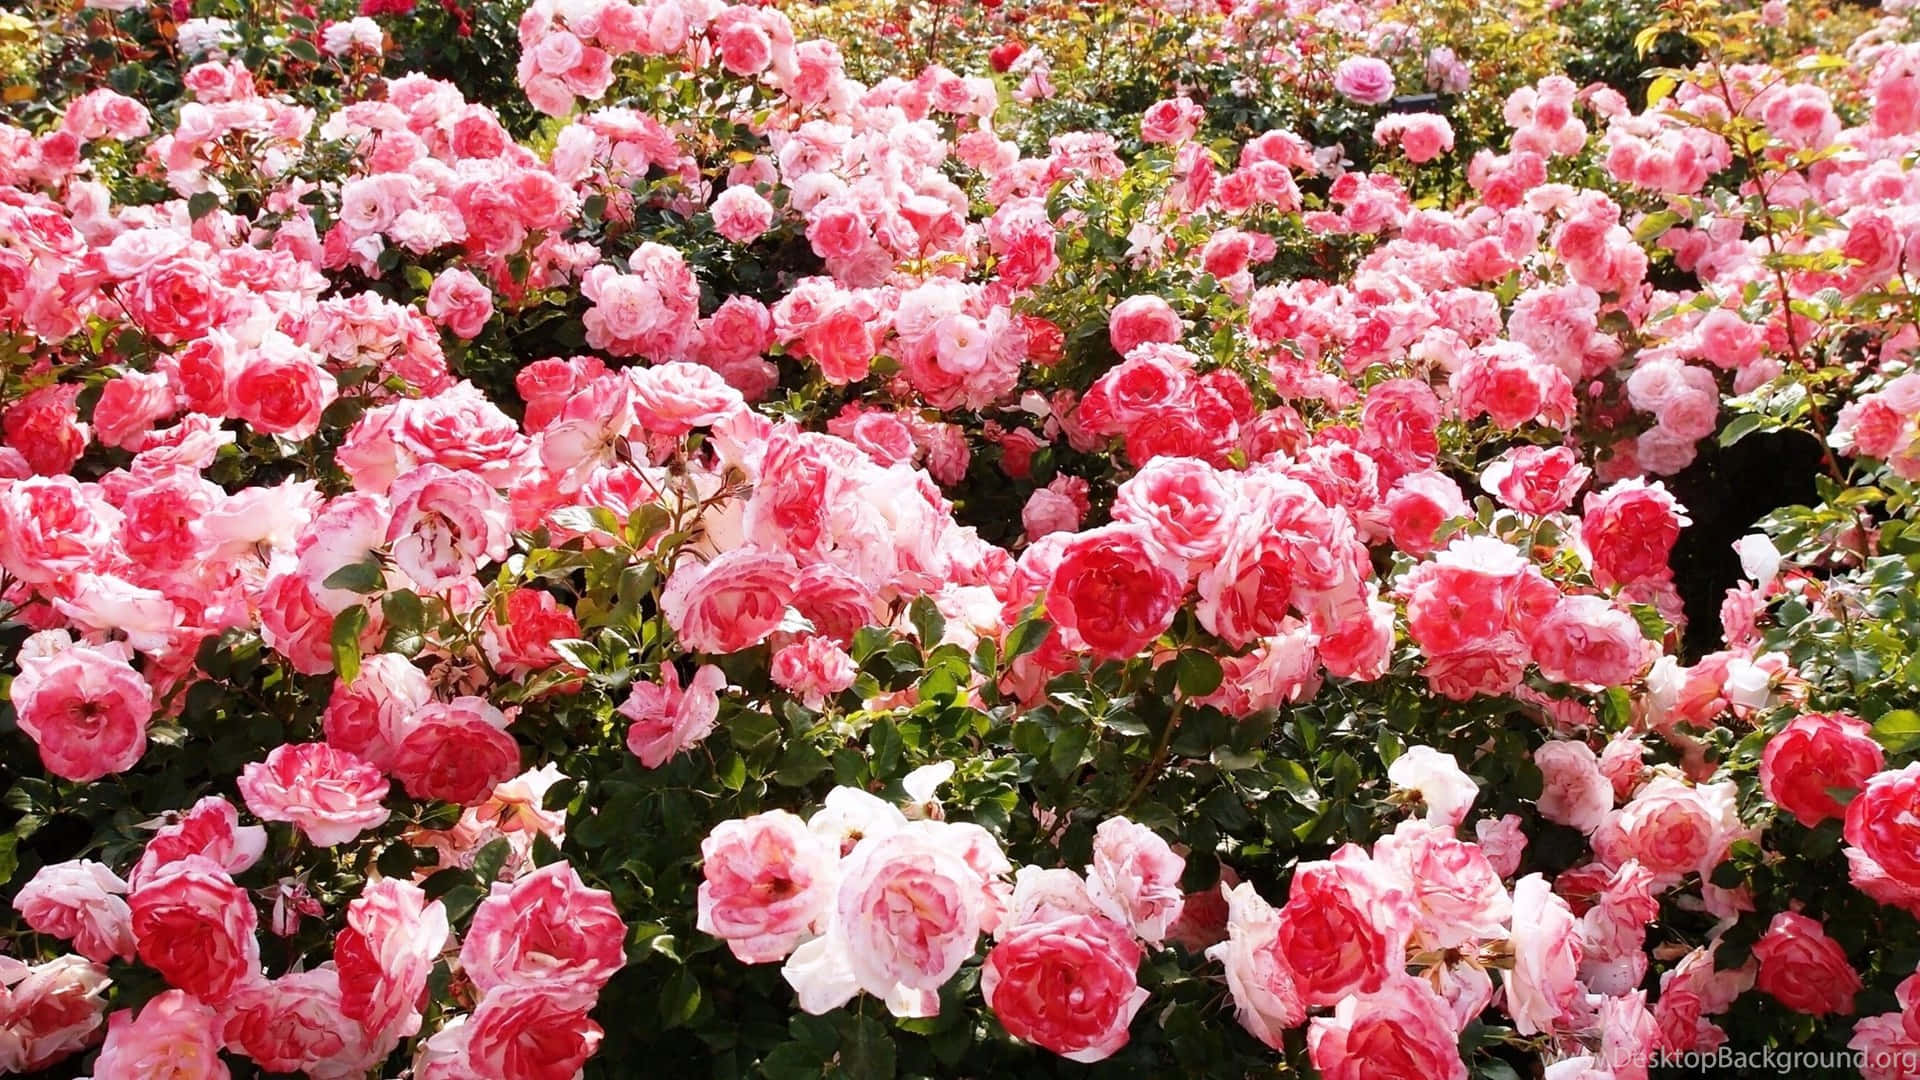 Harmonious Collection of Gorgeous Garden Roses